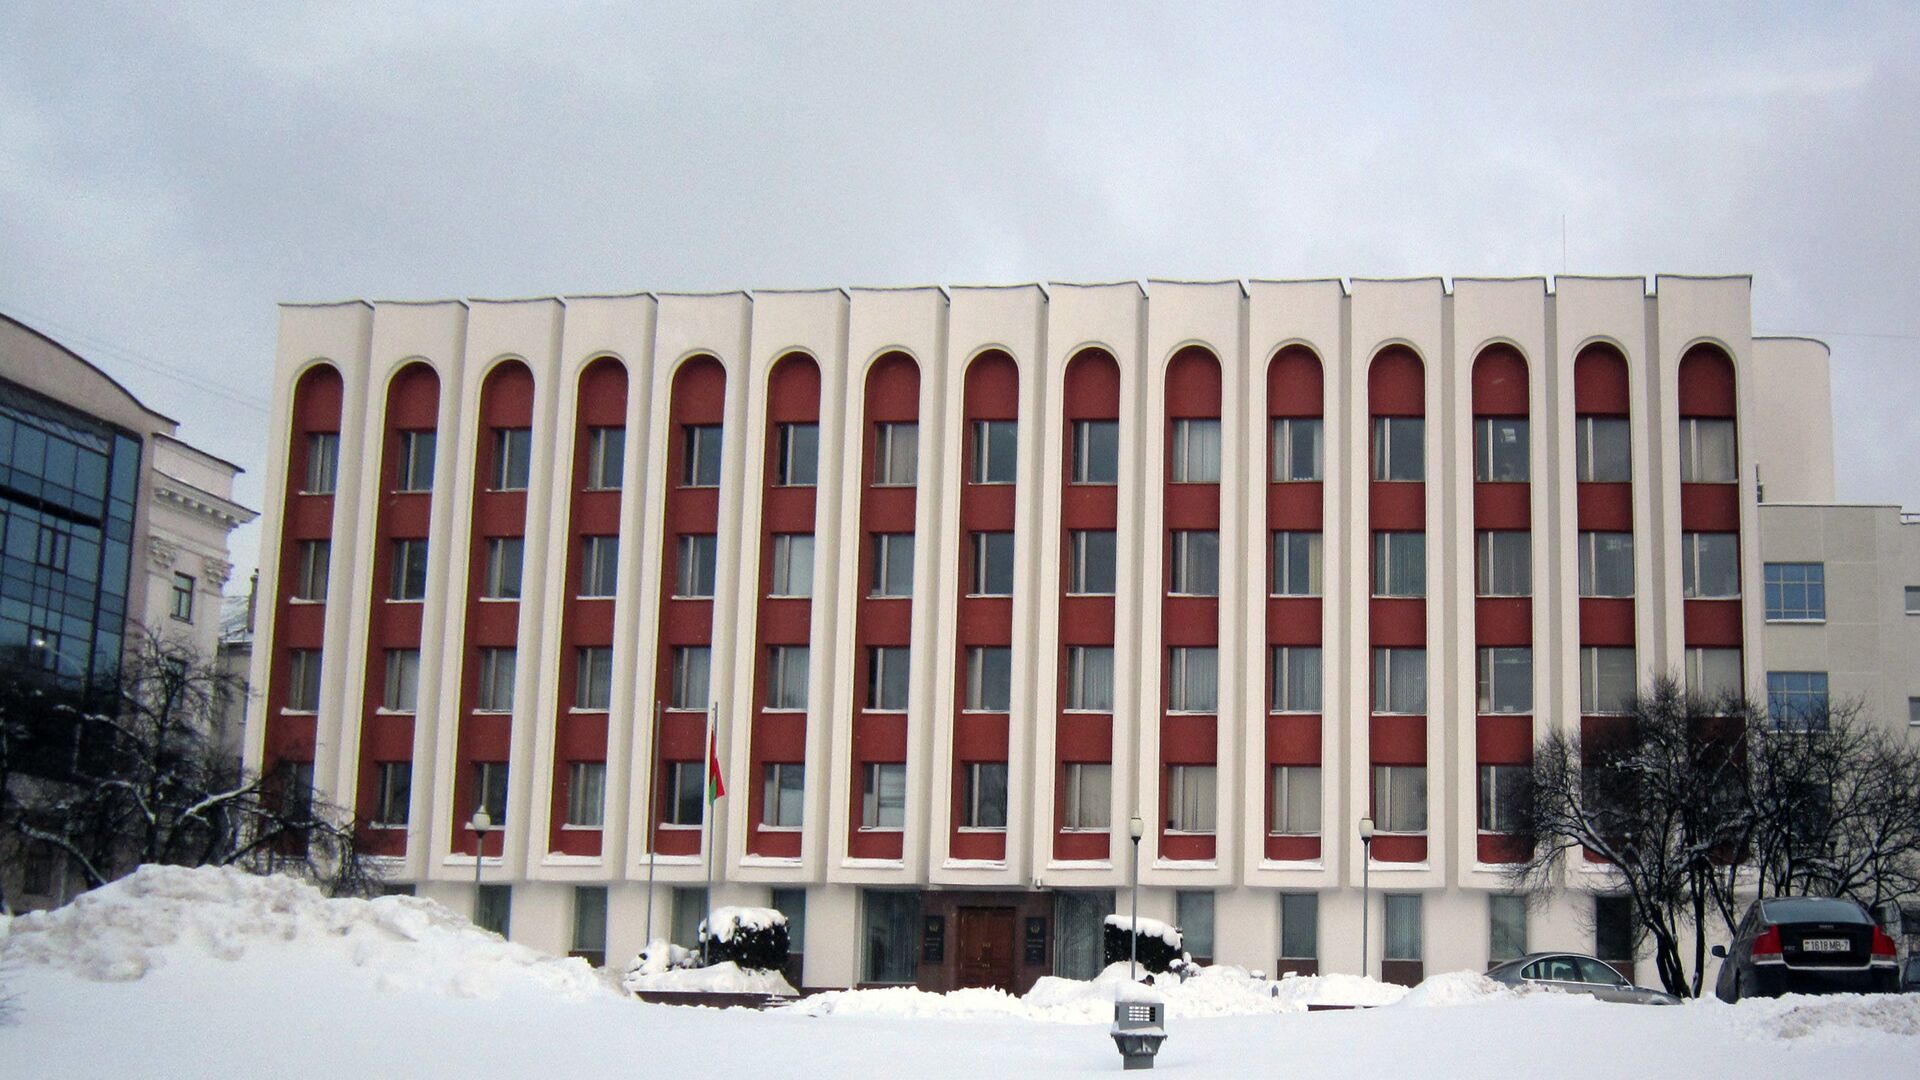 Baltarusijos Respublikos užsienio reikalų ministerijos pastatas - Sputnik Lietuva, 1920, 20.12.2021